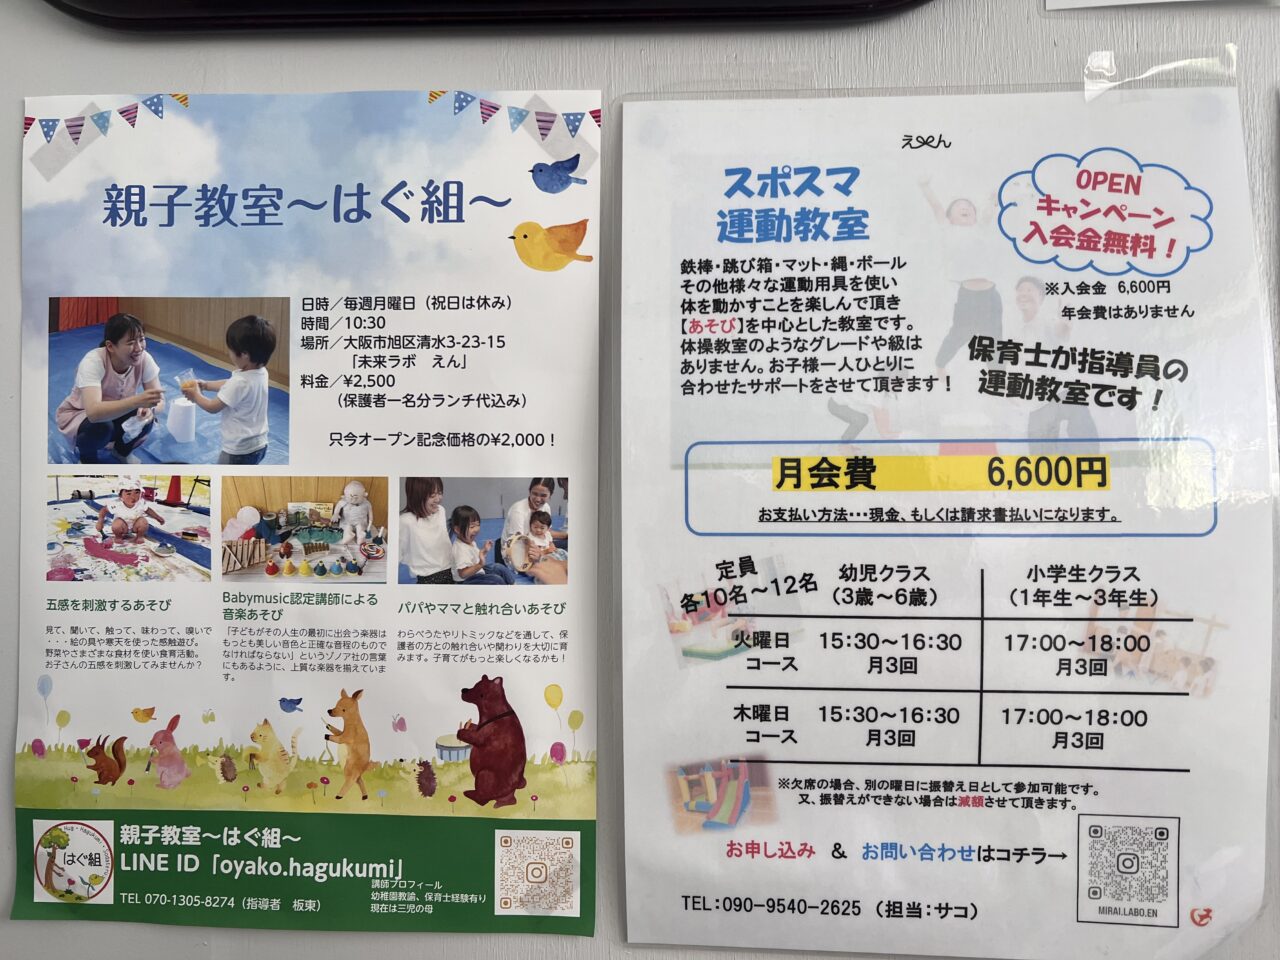 大阪市旭区旭清水幼稚園をリノベーションした遊べるカフェ「未来ラボえん」のスポスマ運動教室